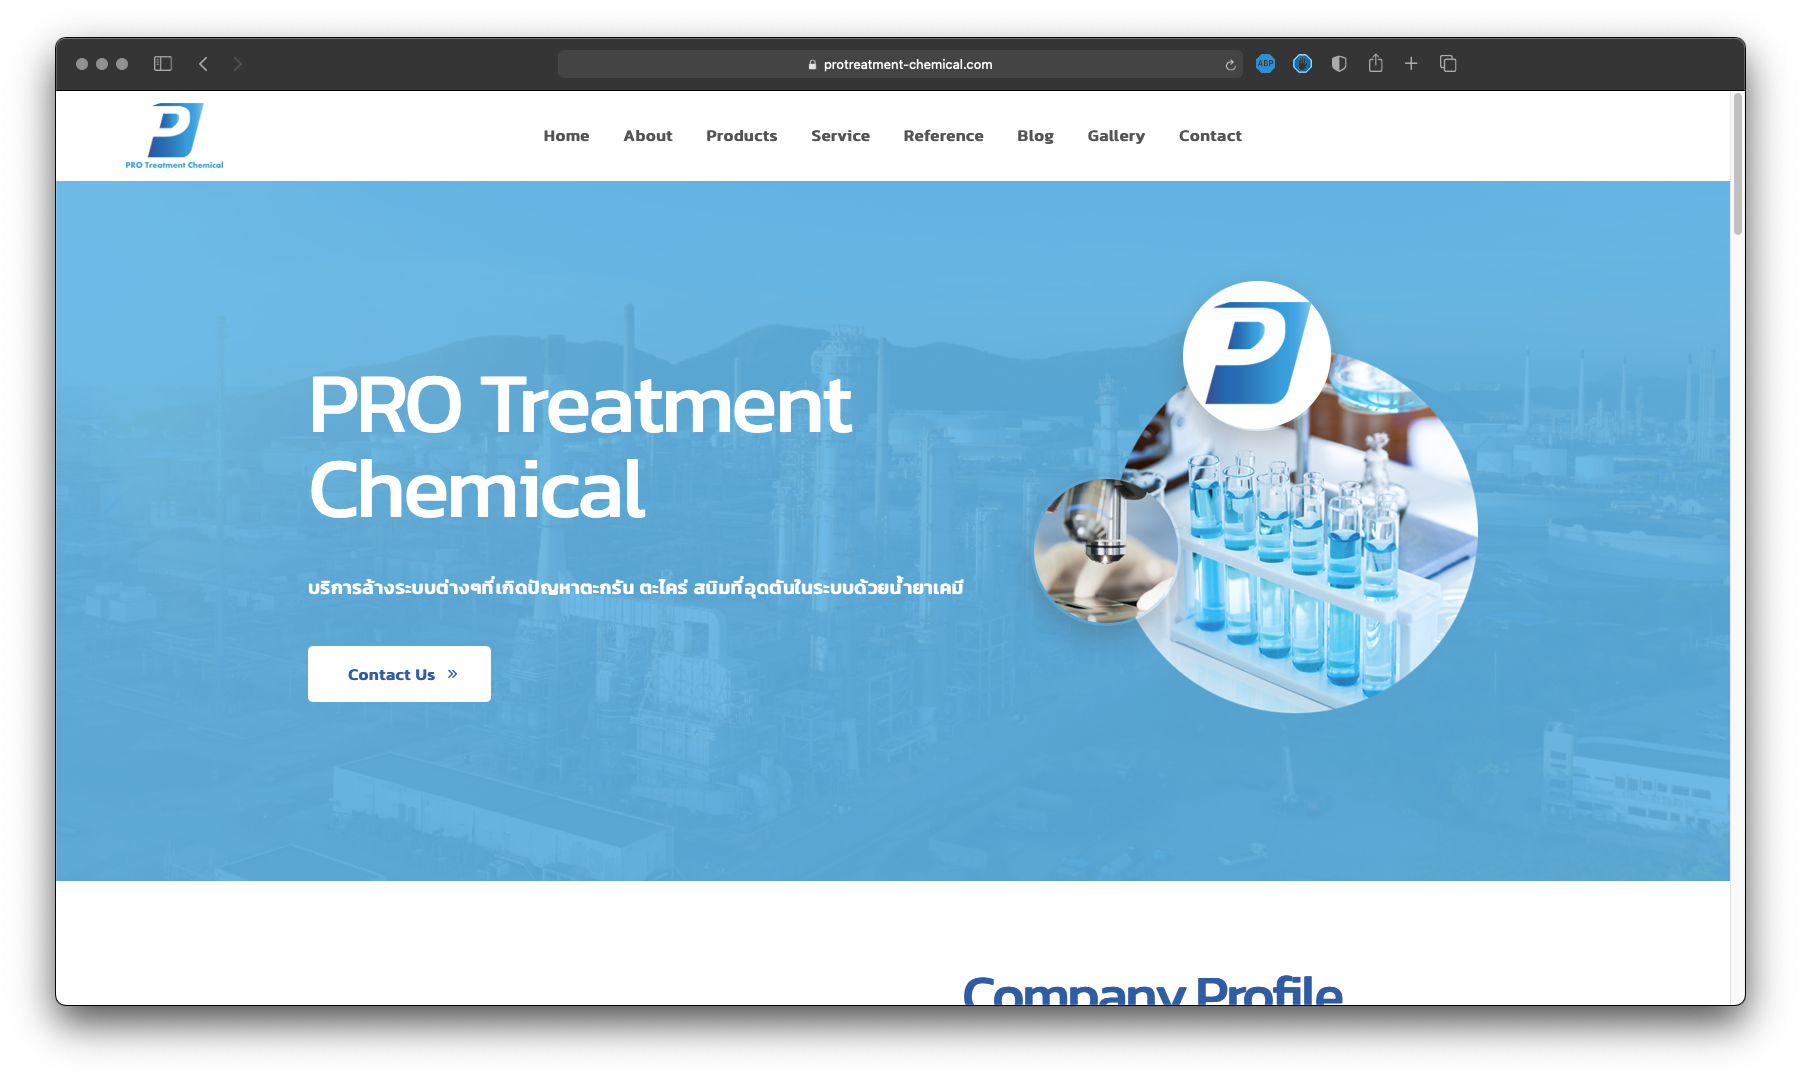 รับทำเว็บไซต์ รับออกแบบเว็บไซต์ เว็บไซต์สำเร็จรูป ตัวอย่างเว็บไซต์ - ผลิตภัณฑ์อุตสาหกรรม / จำหน่ายเคมี TTT-WEBSITE